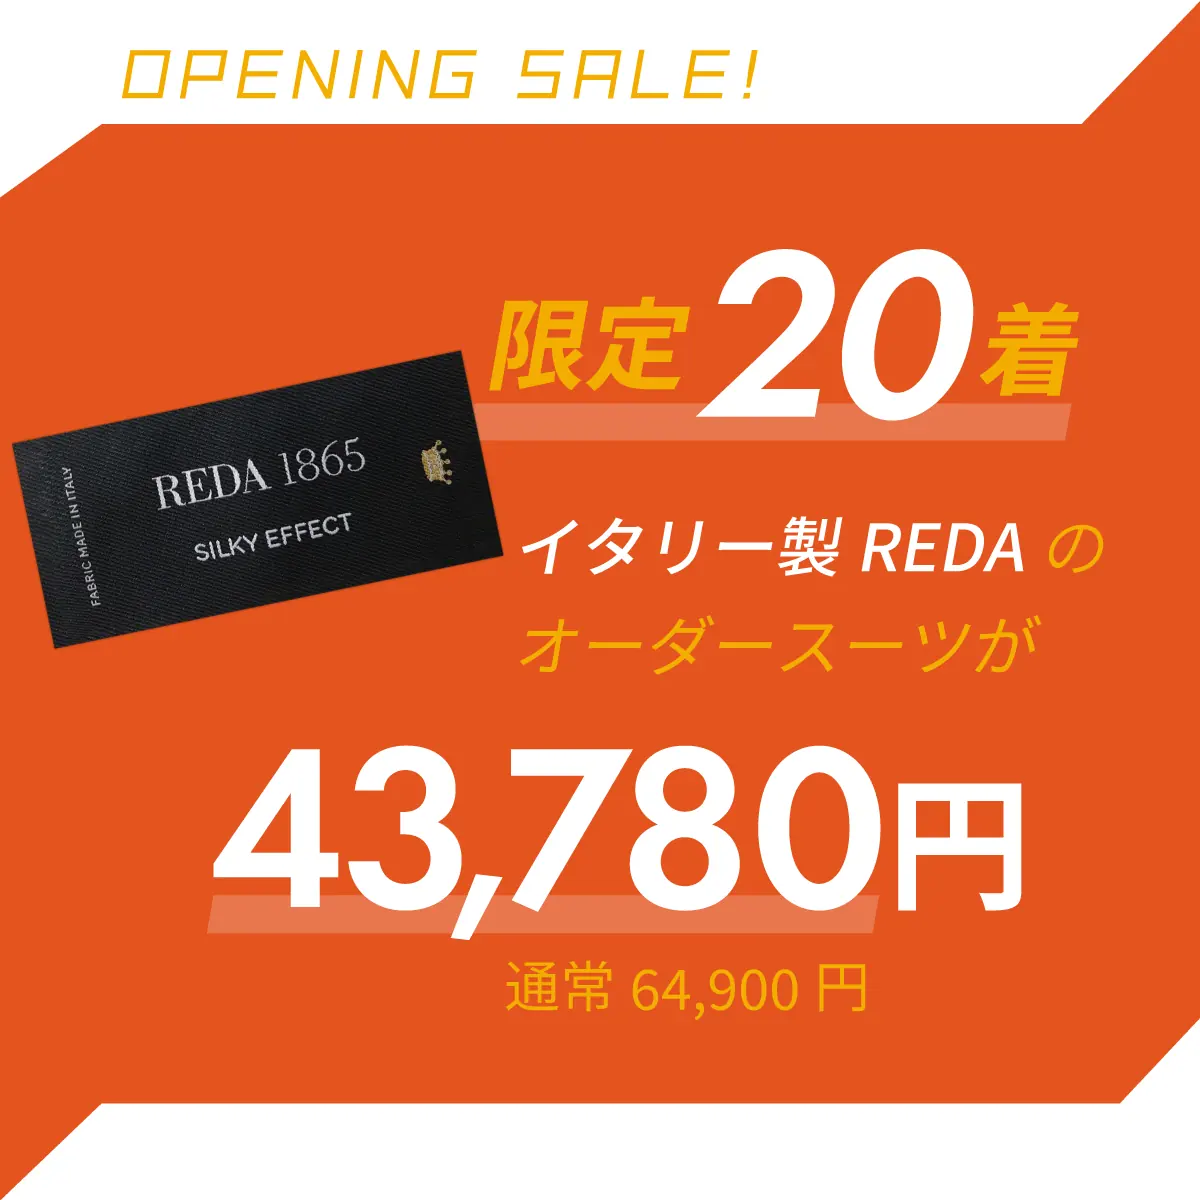 限定20着。イタリー製REDAのスーツが43,780円。通常価格64,900円